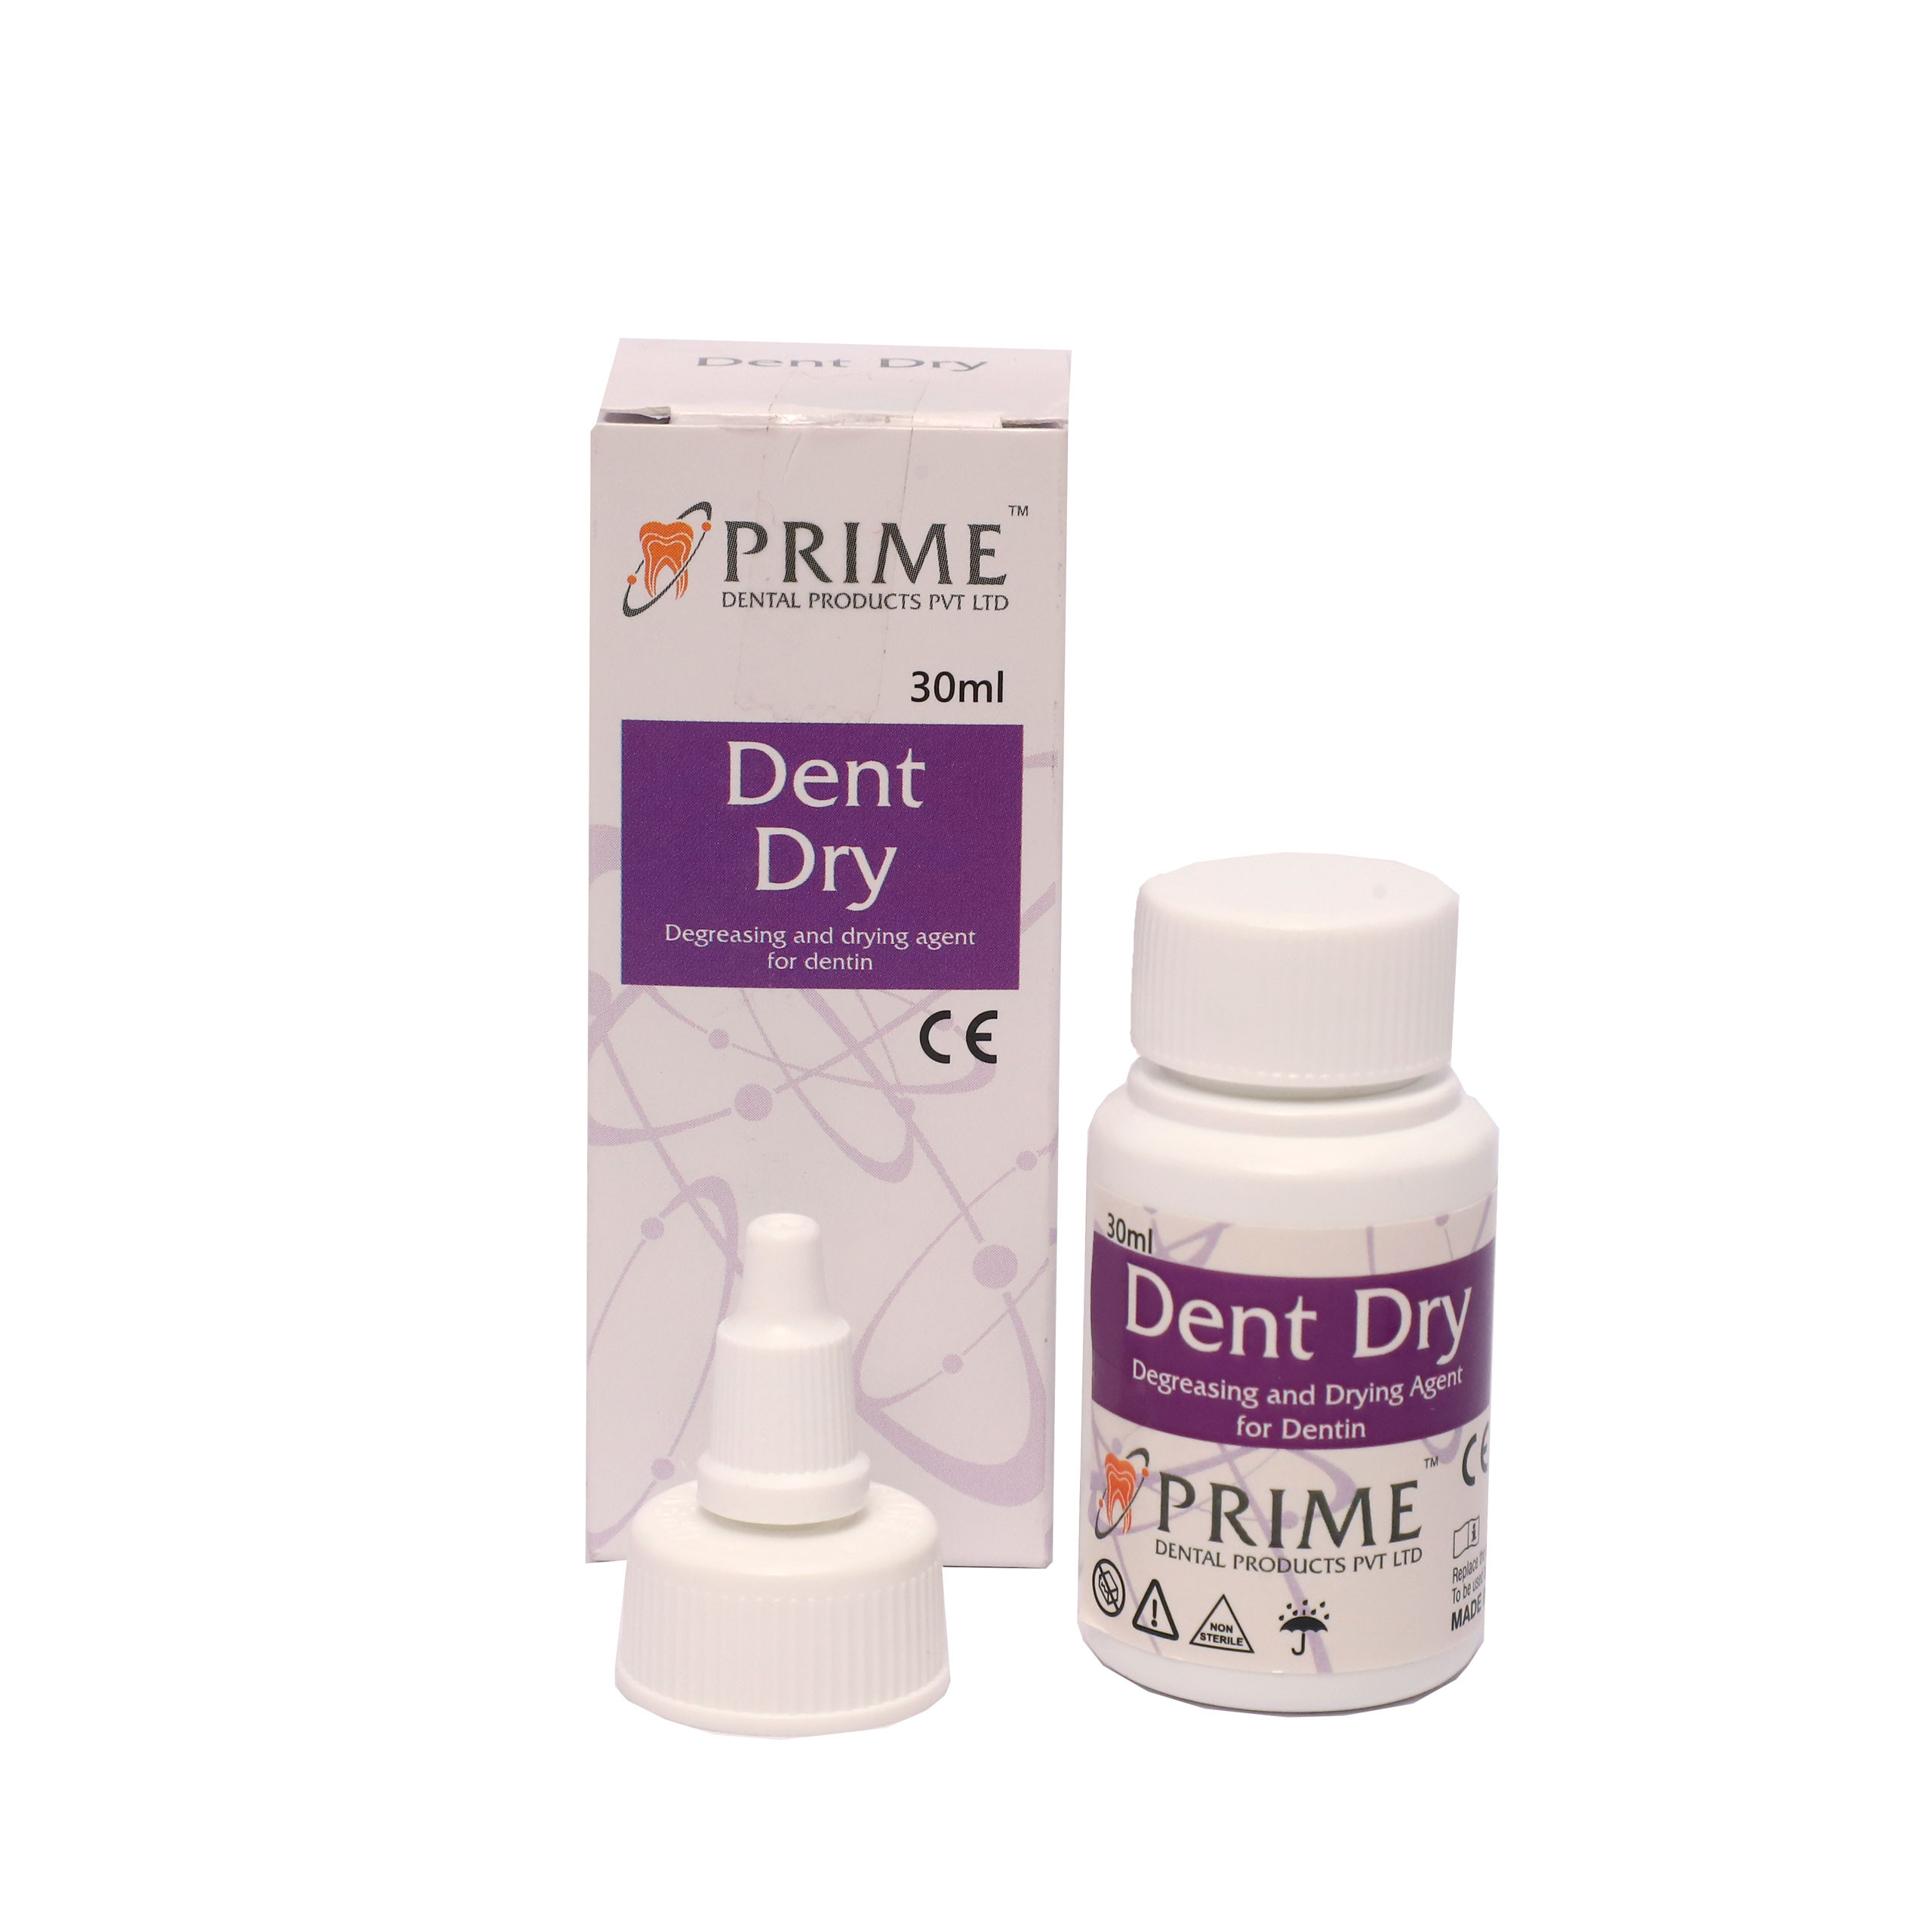 Prime Dent Dent Dry (Pack of 5)